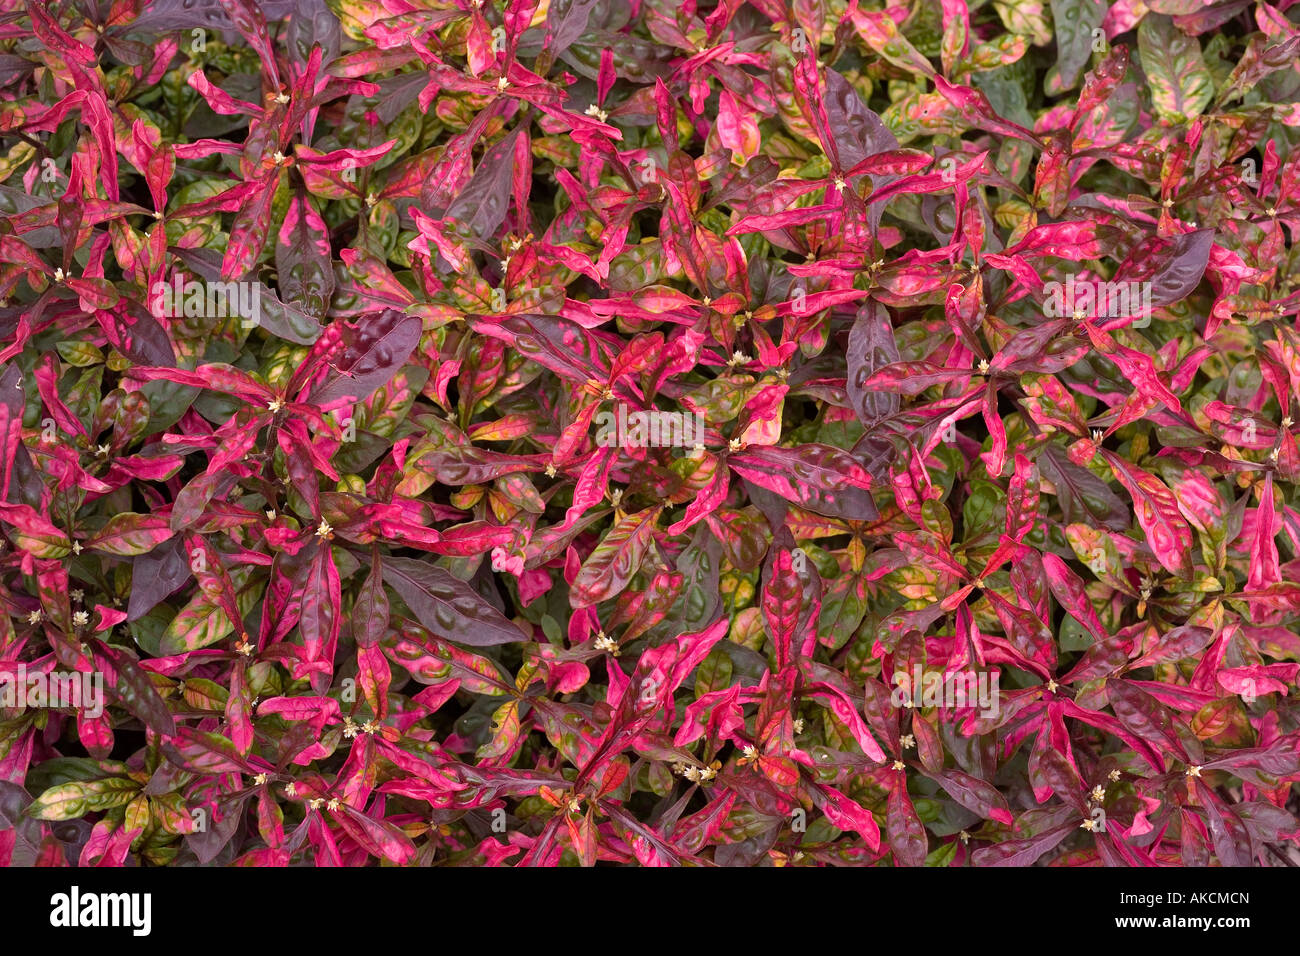 Alternanthera ficoidea versicolor flower close up Stock Photo - Alamy